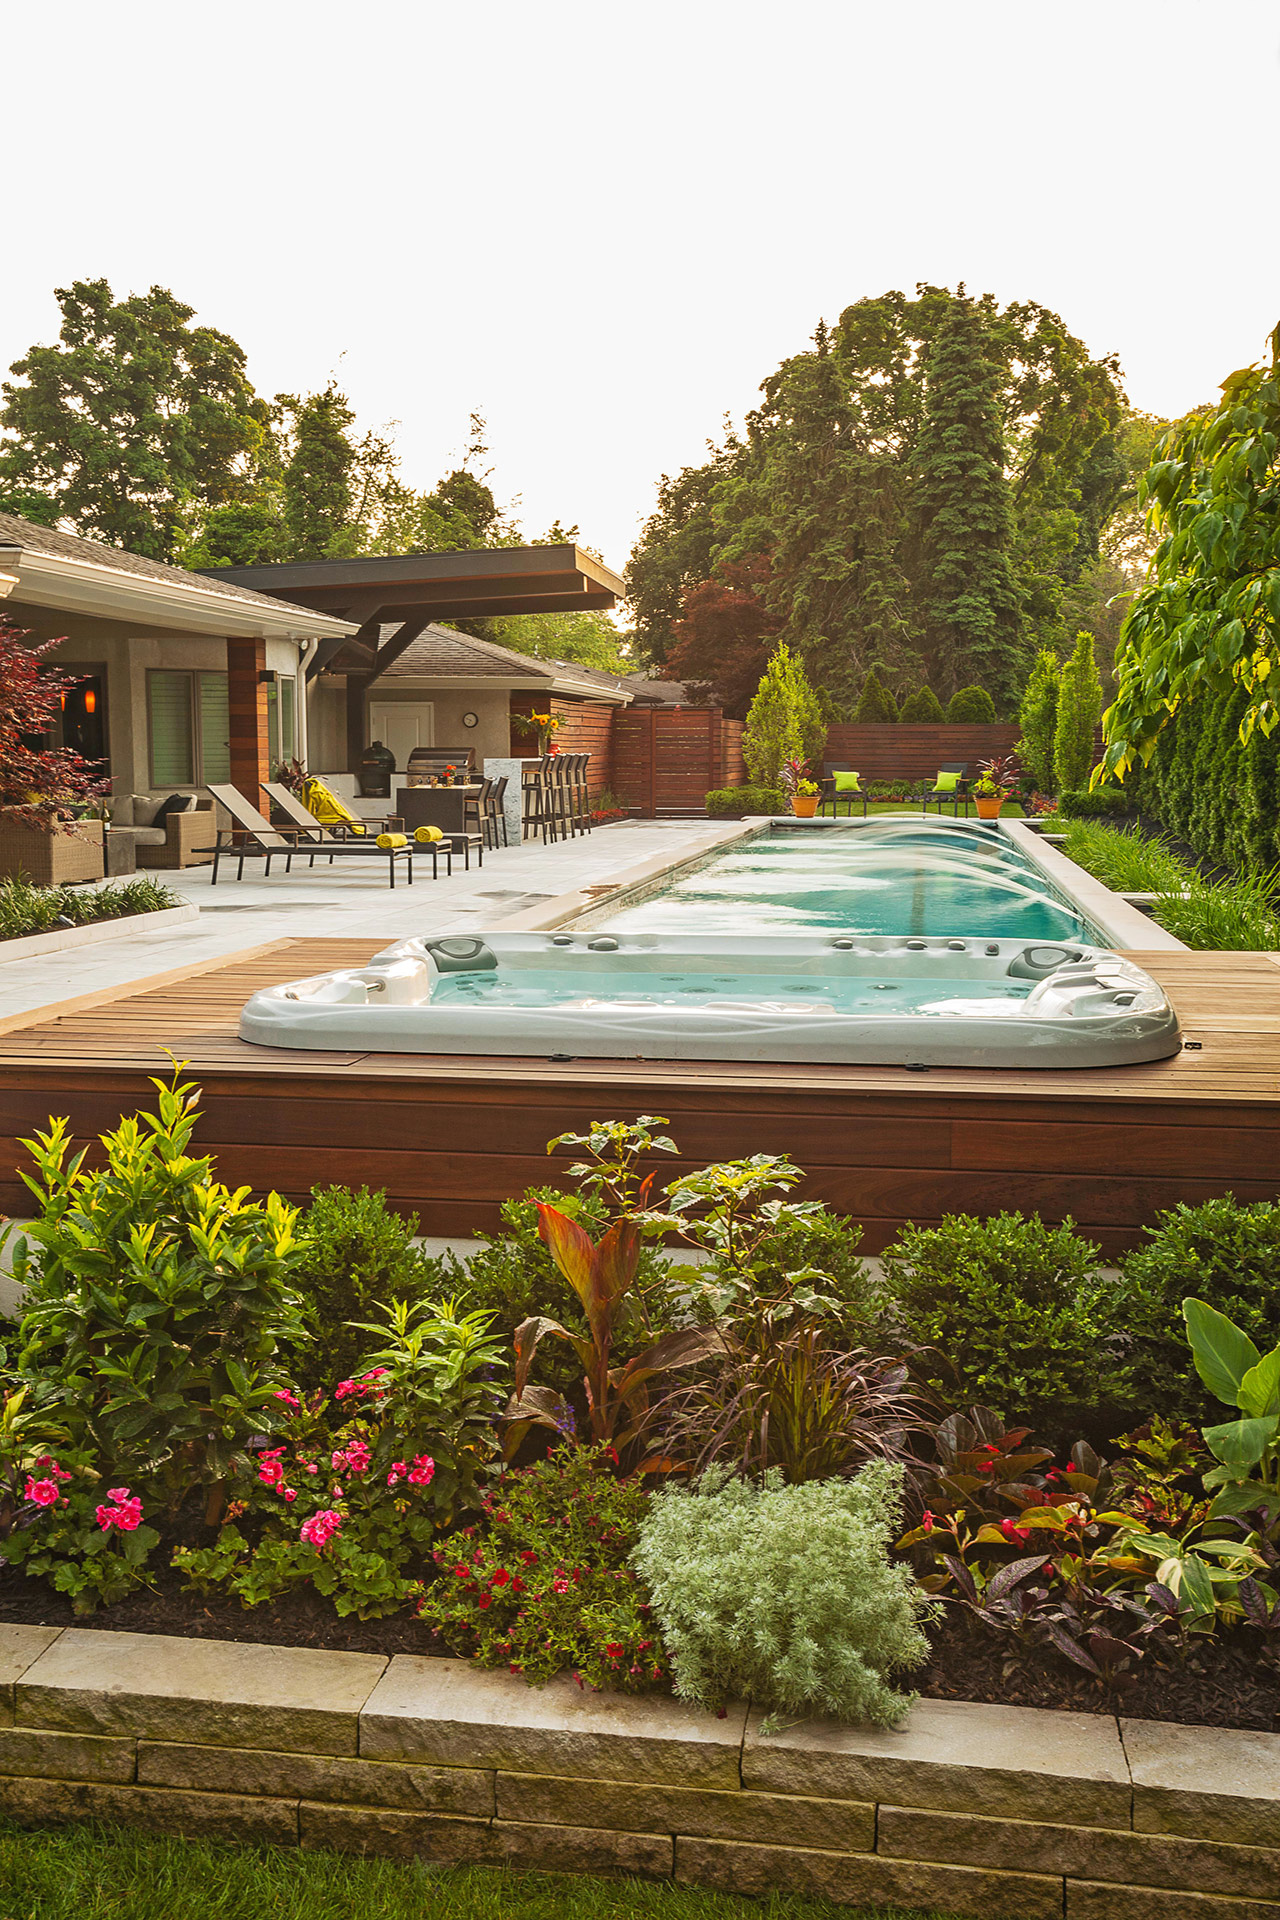 Summer garden idea with an outdoor hot tub